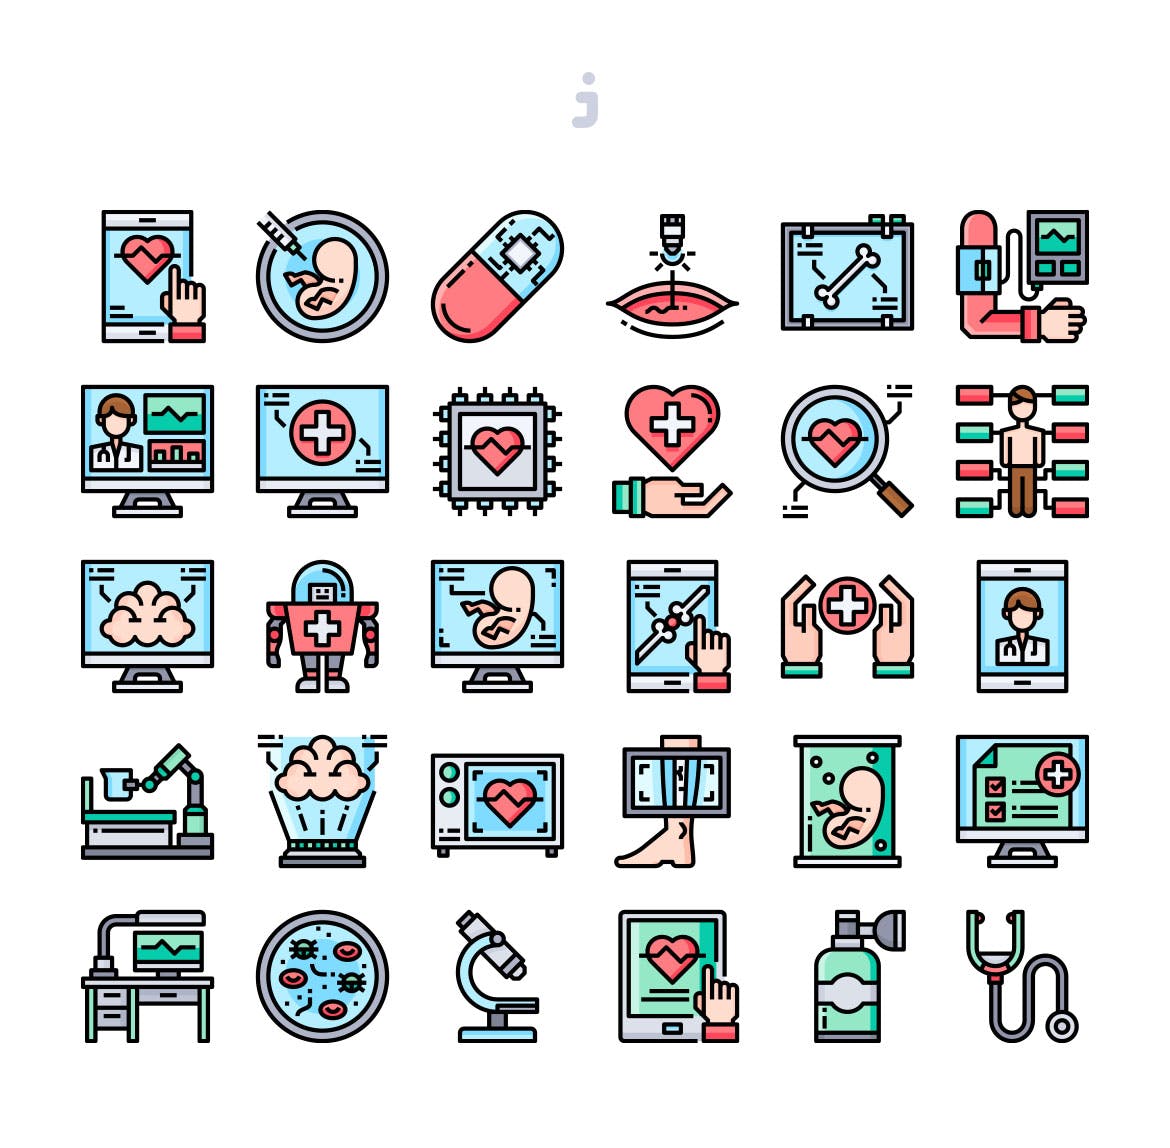 30枚医疗技术彩色矢量图标素材 30 Medical Technology Icons插图(1)